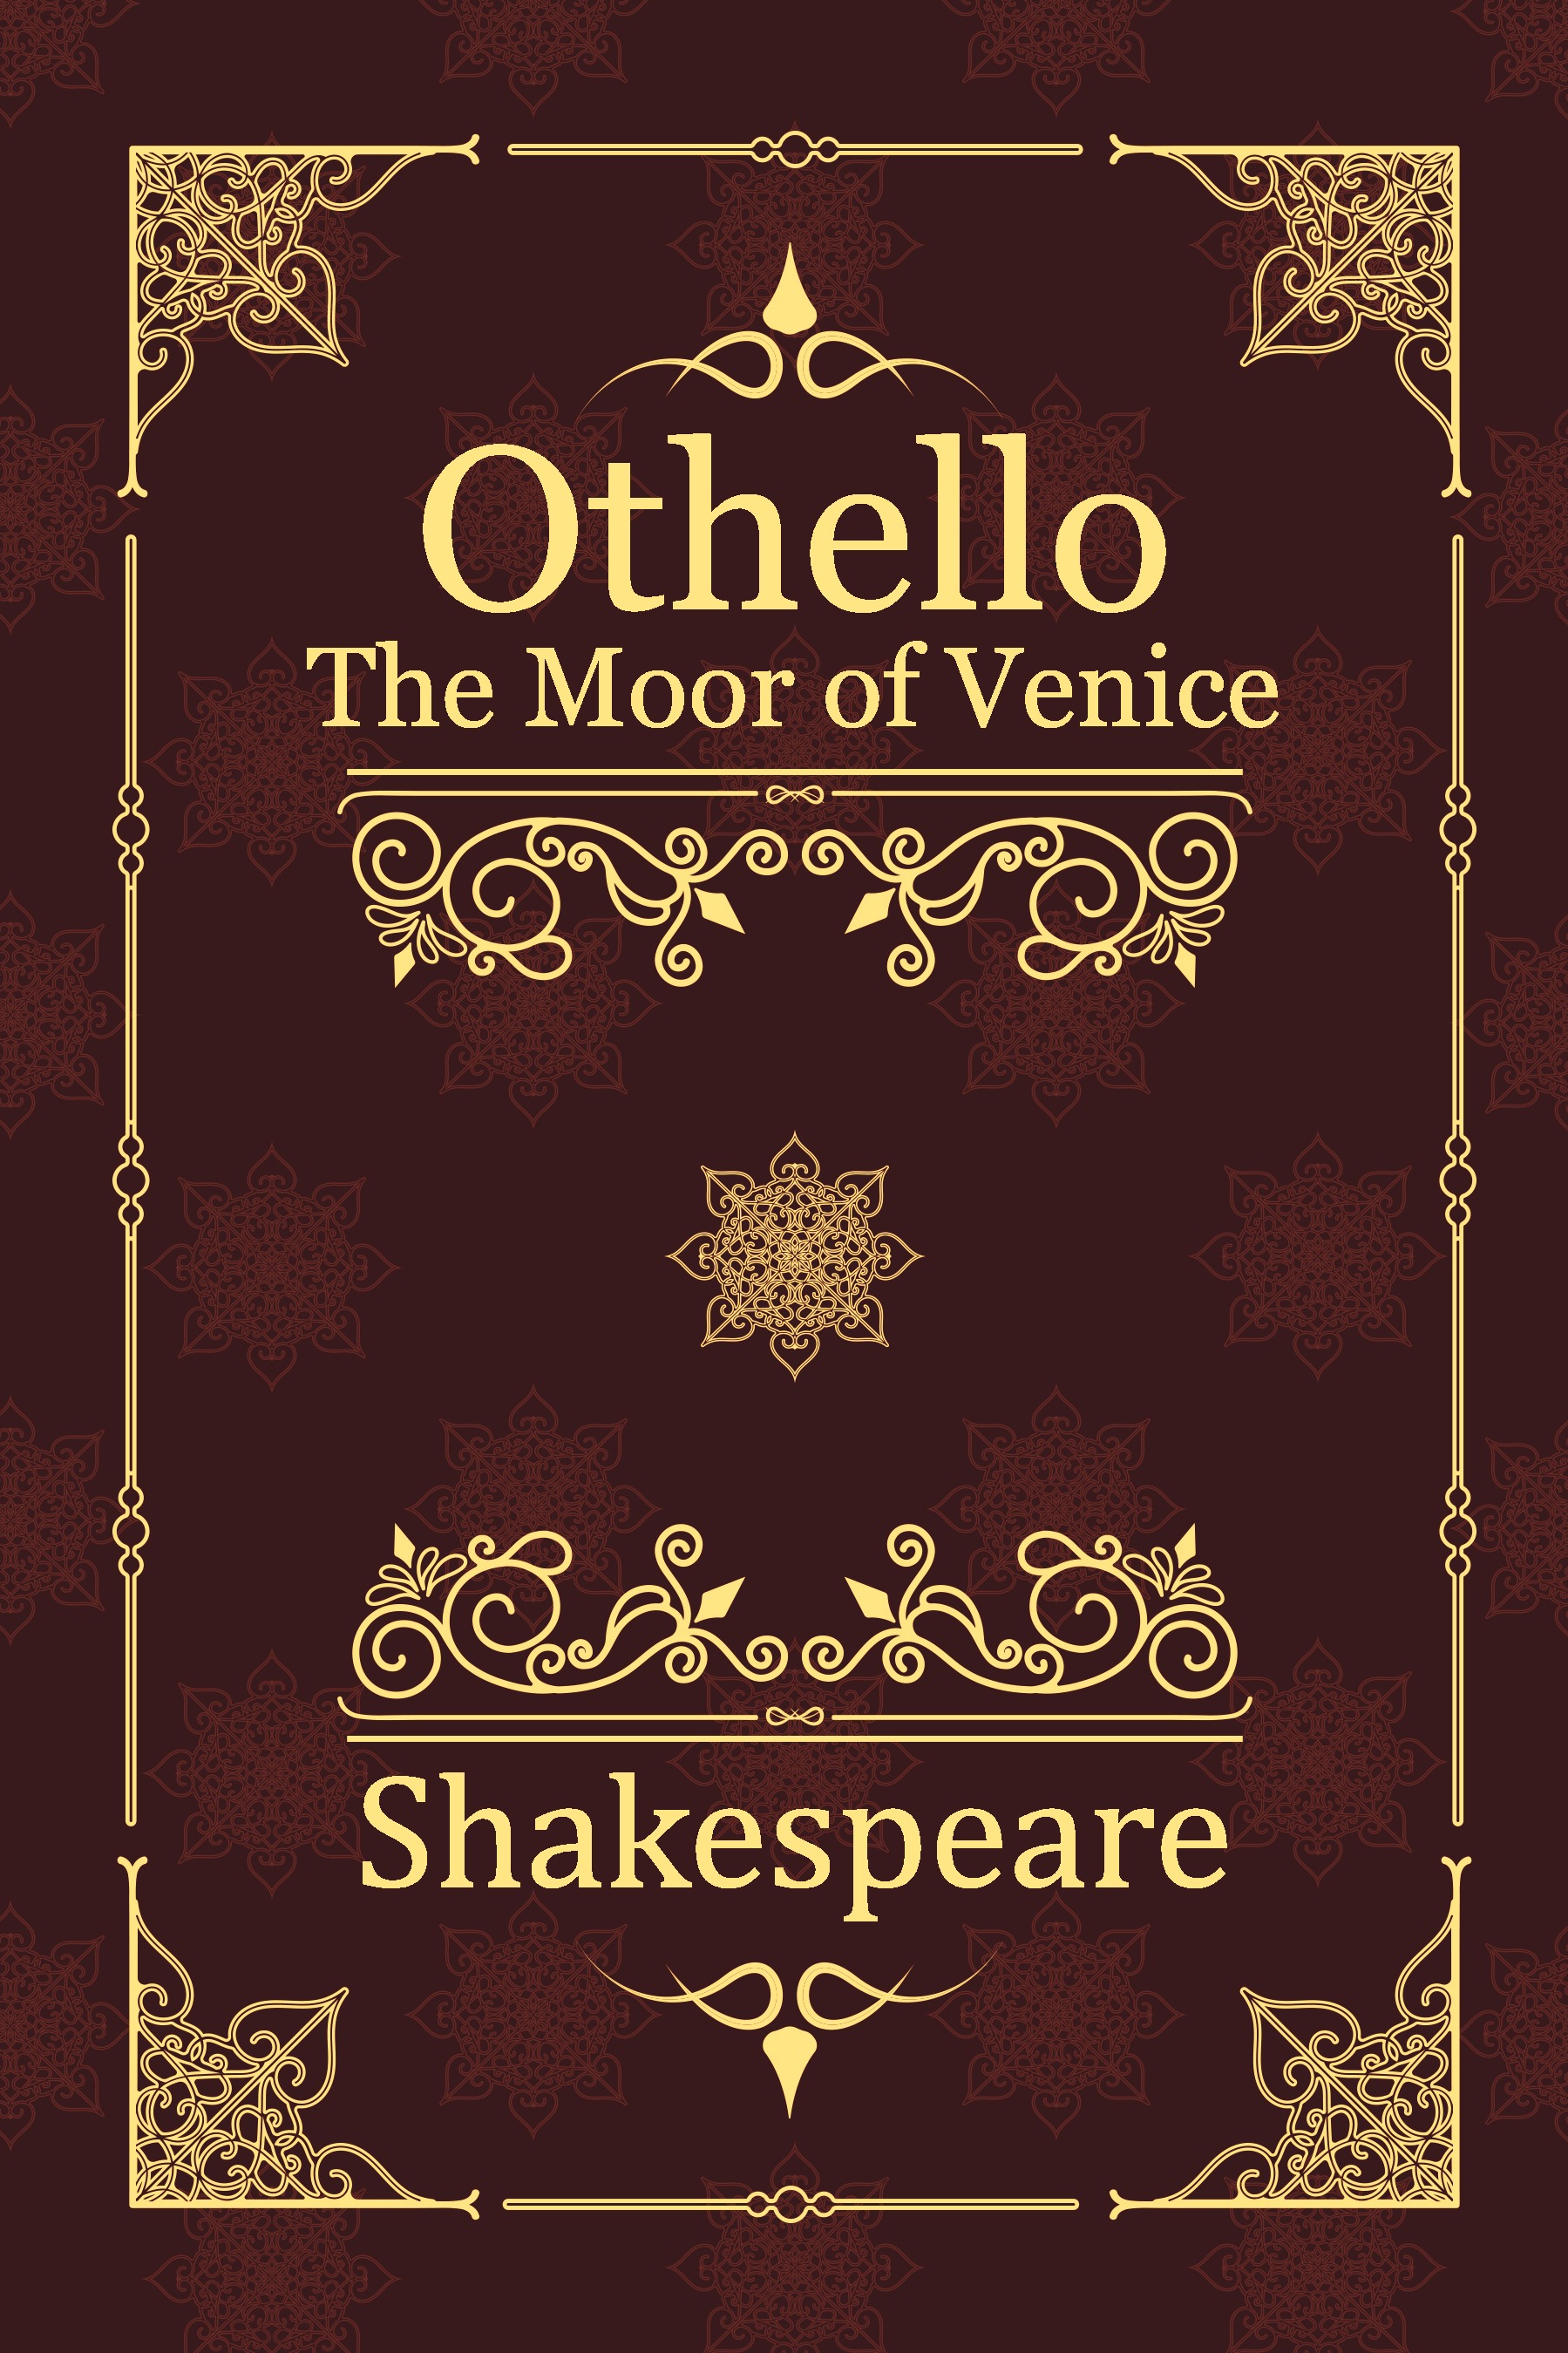 othello book cover